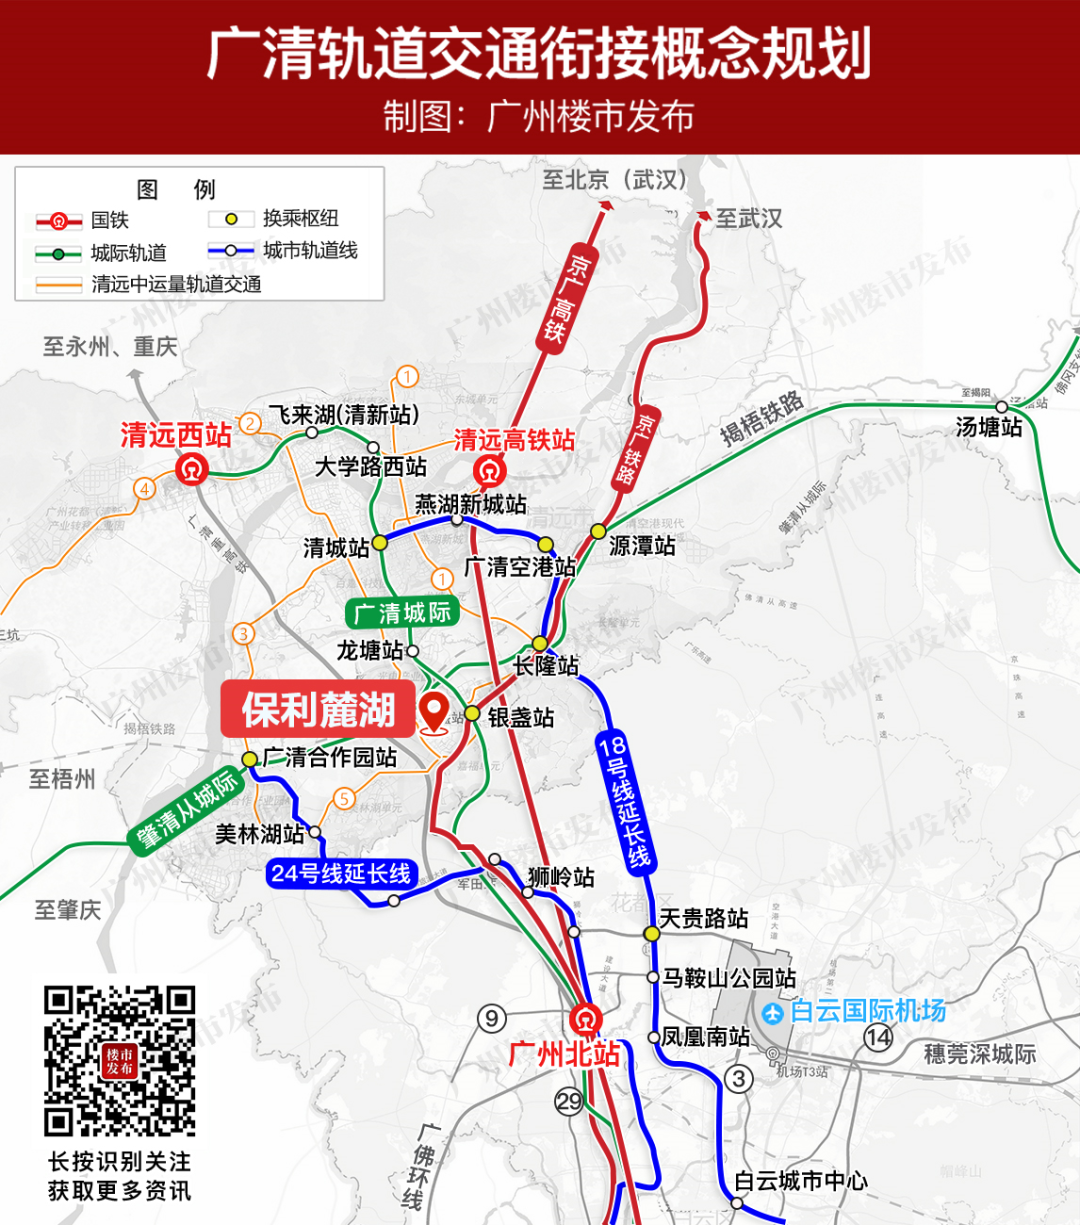 前两天,省铁投集团发布《广清城际轨道交通项目征求意见稿》,提出  广